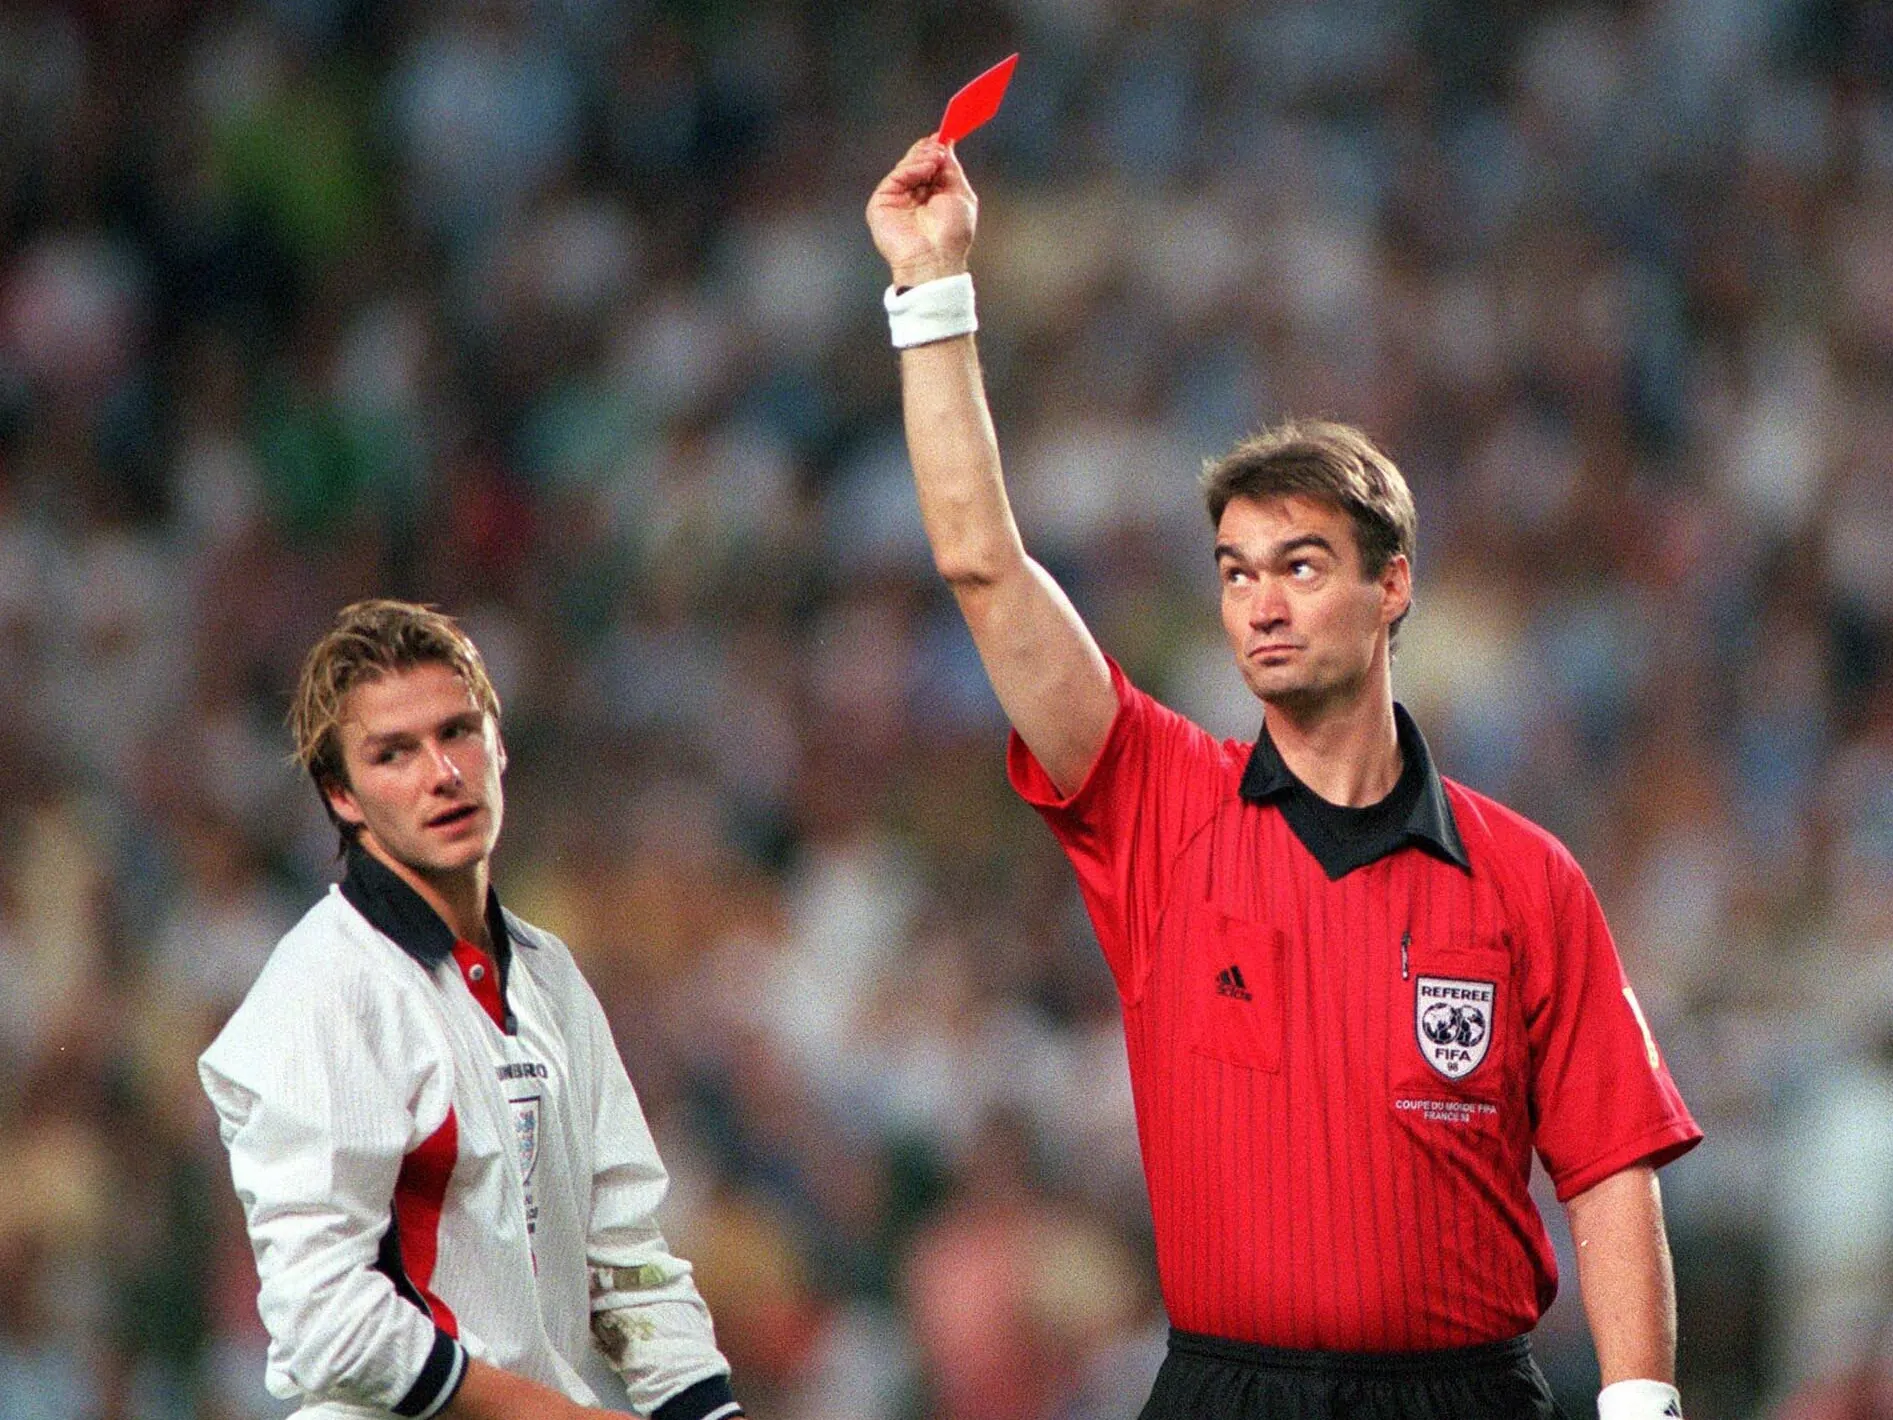 Premier League: La tarjeta roja redonda (casi) nunca antes vista que causa  furor en Inglaterra y sus dos explicaciones